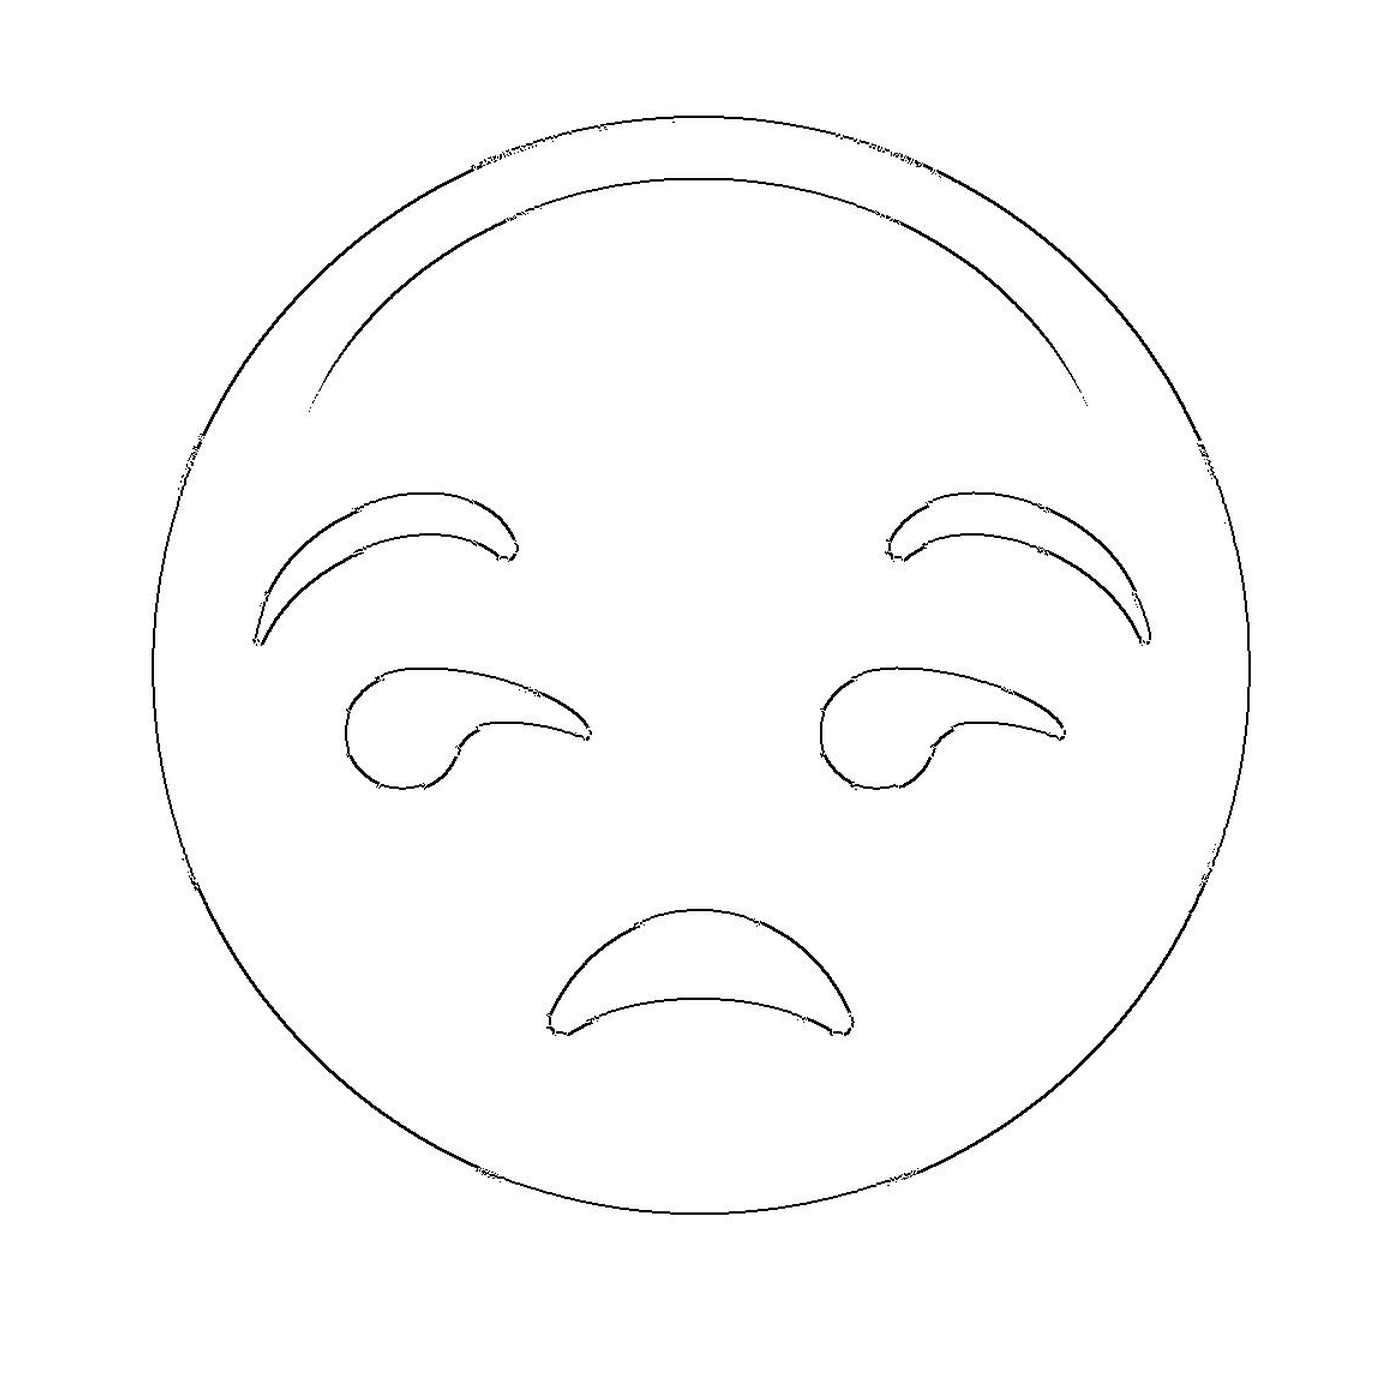   Un visage triste dessiné 